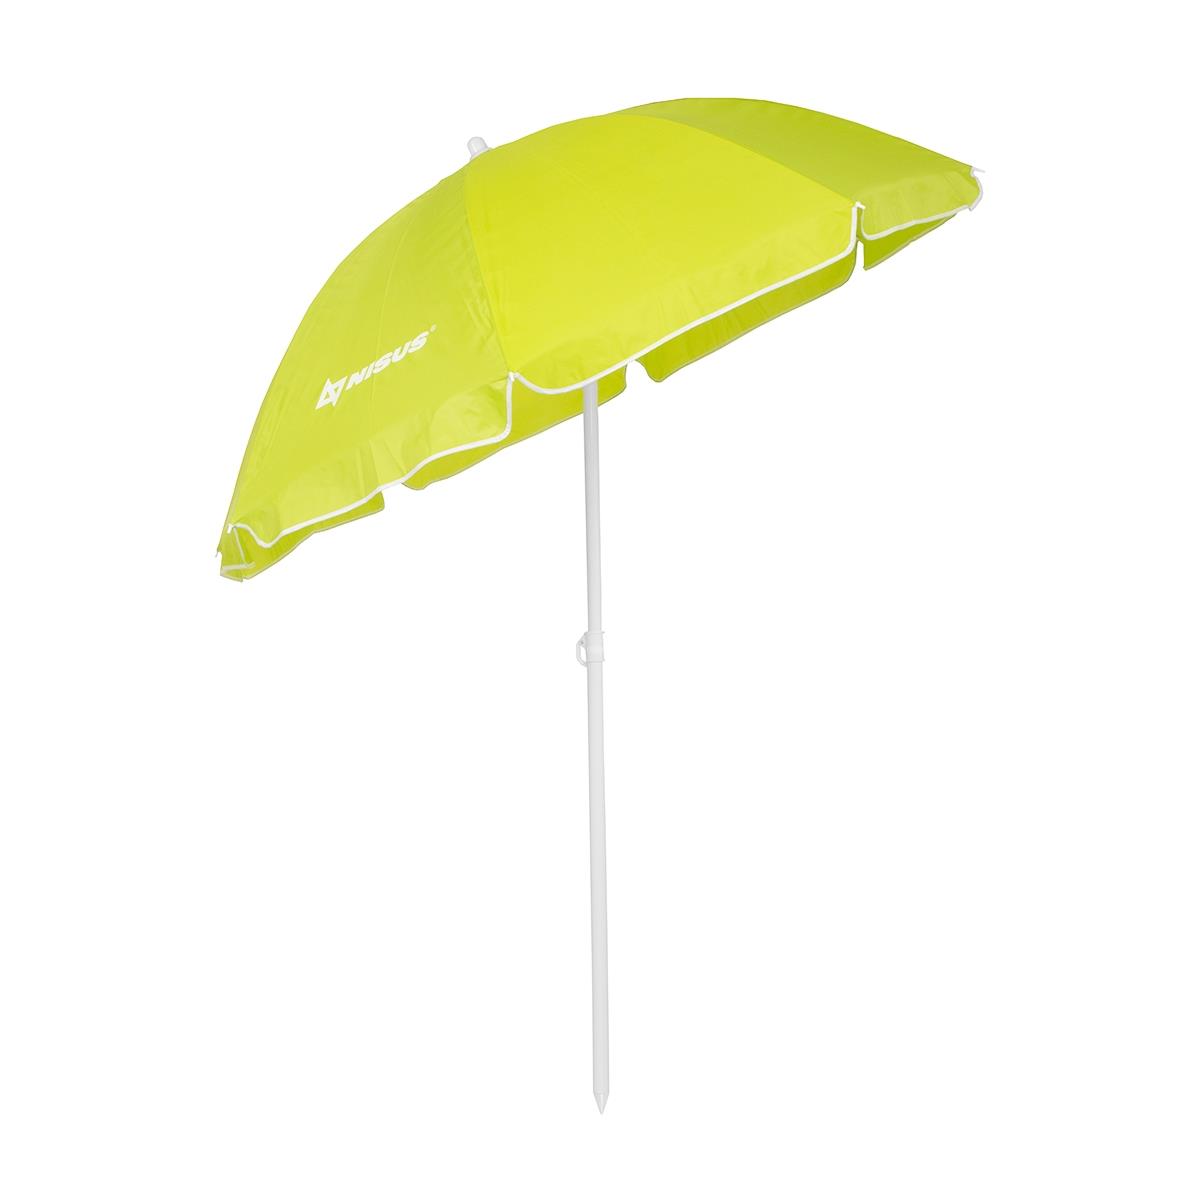 Зонт пляжный d 2,4м с наклоном  (28/32/210D) NA-240N-LG Nisus зонт пляжный d 1 8м с наклоном арбуз 19 22 170т na bu1907 180 w nisus